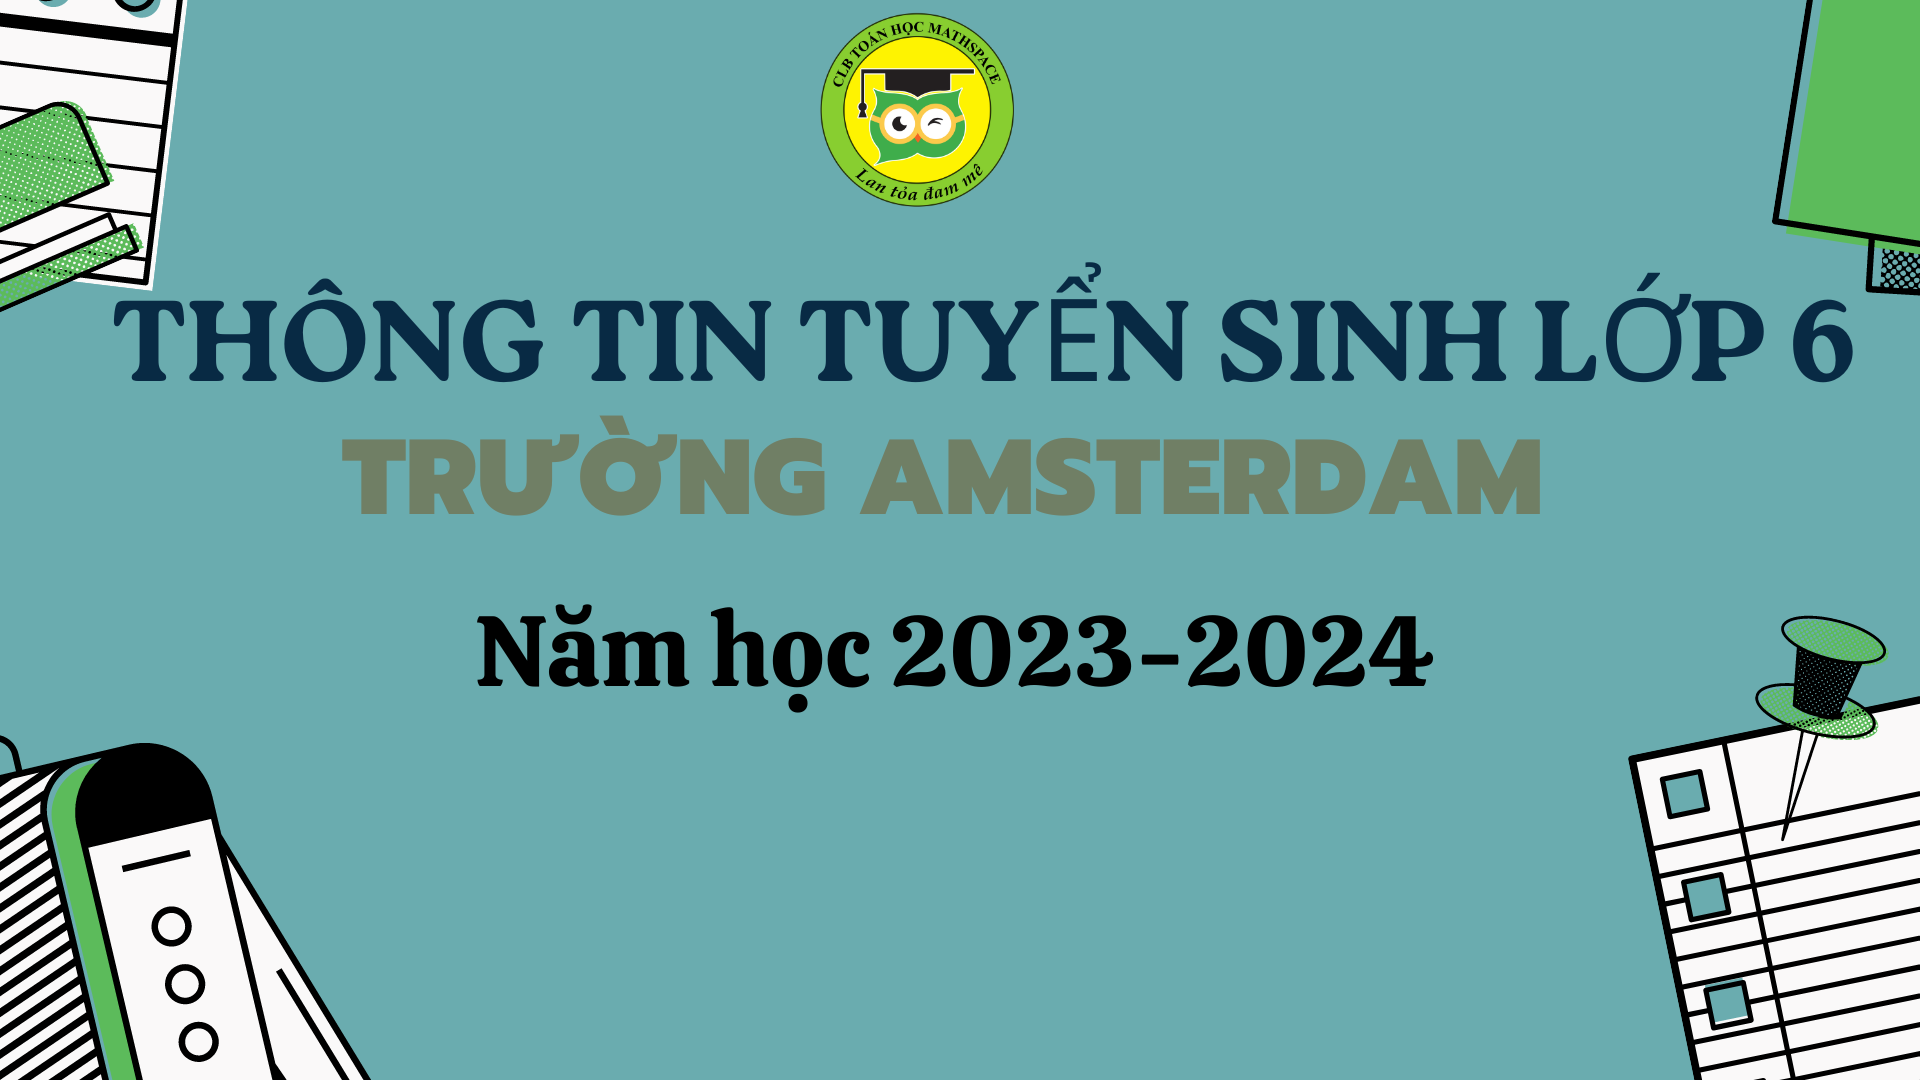 THÔNG TIN TUYỂN SINH VÀO LỚP 6 TRƯỜNG AMSTERDAM NĂM HỌC 2023-2024